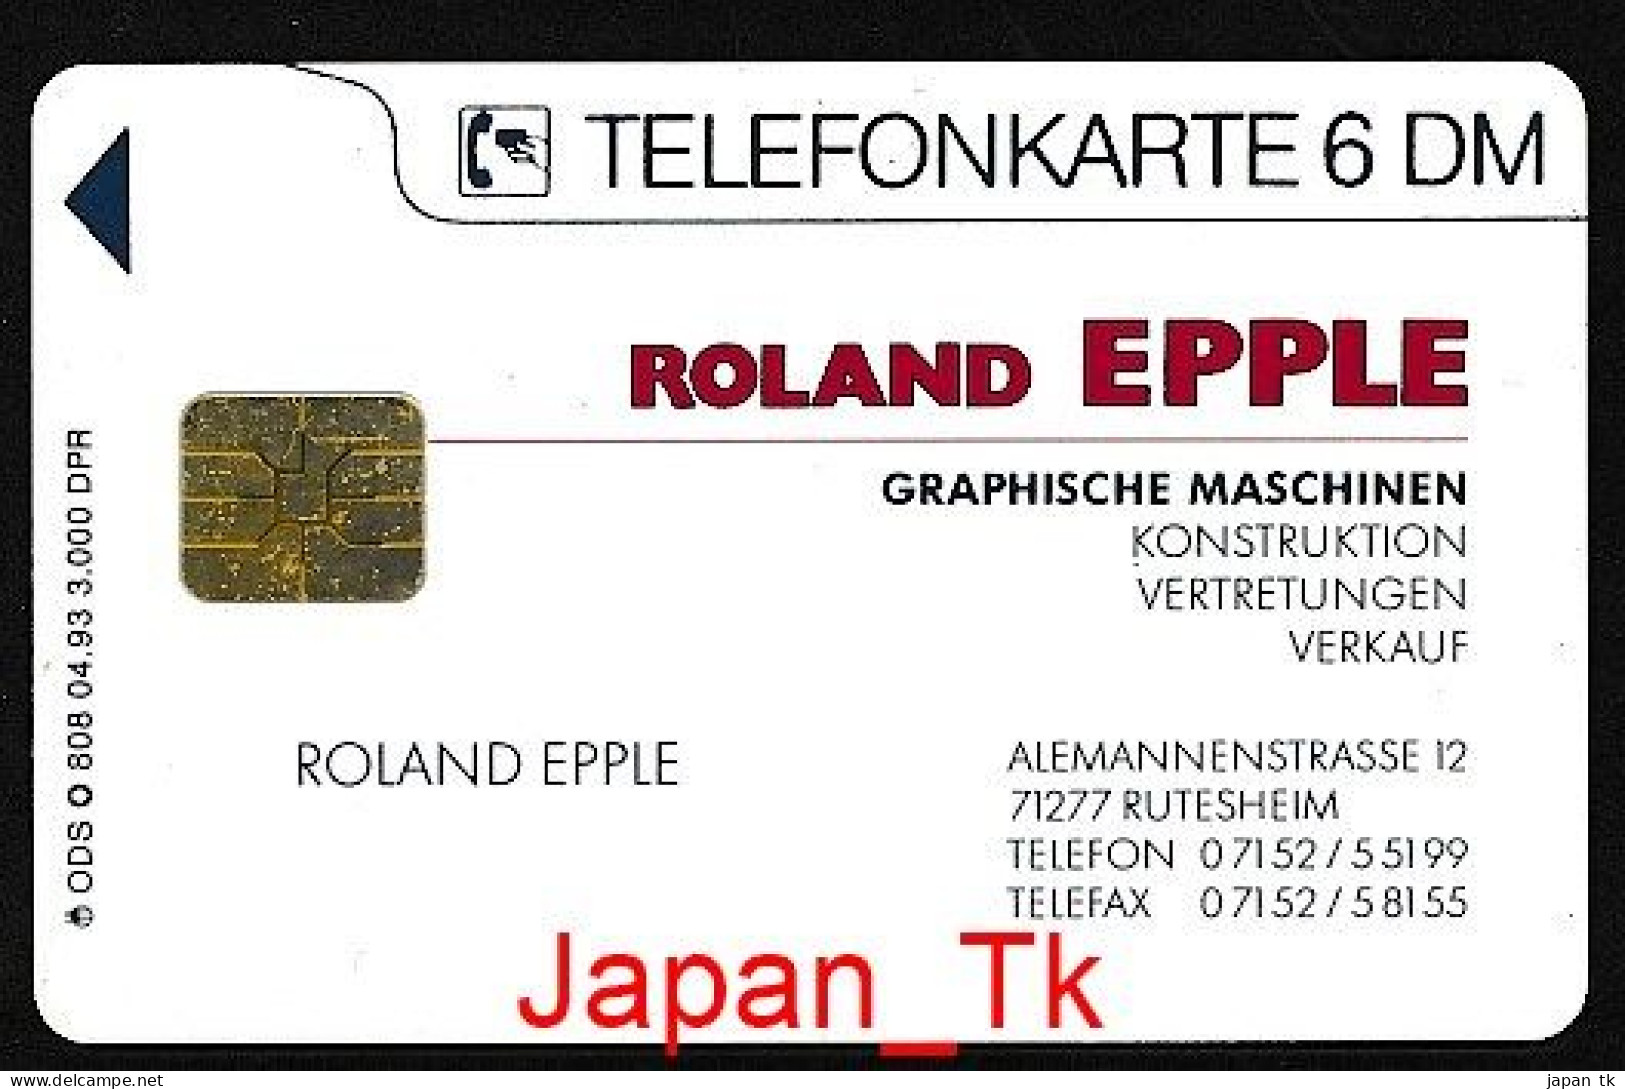 GERMANY O 808 93 Roland Epple - Aufl  3 000 - Siehe Scan - O-Series: Kundenserie Vom Sammlerservice Ausgeschlossen